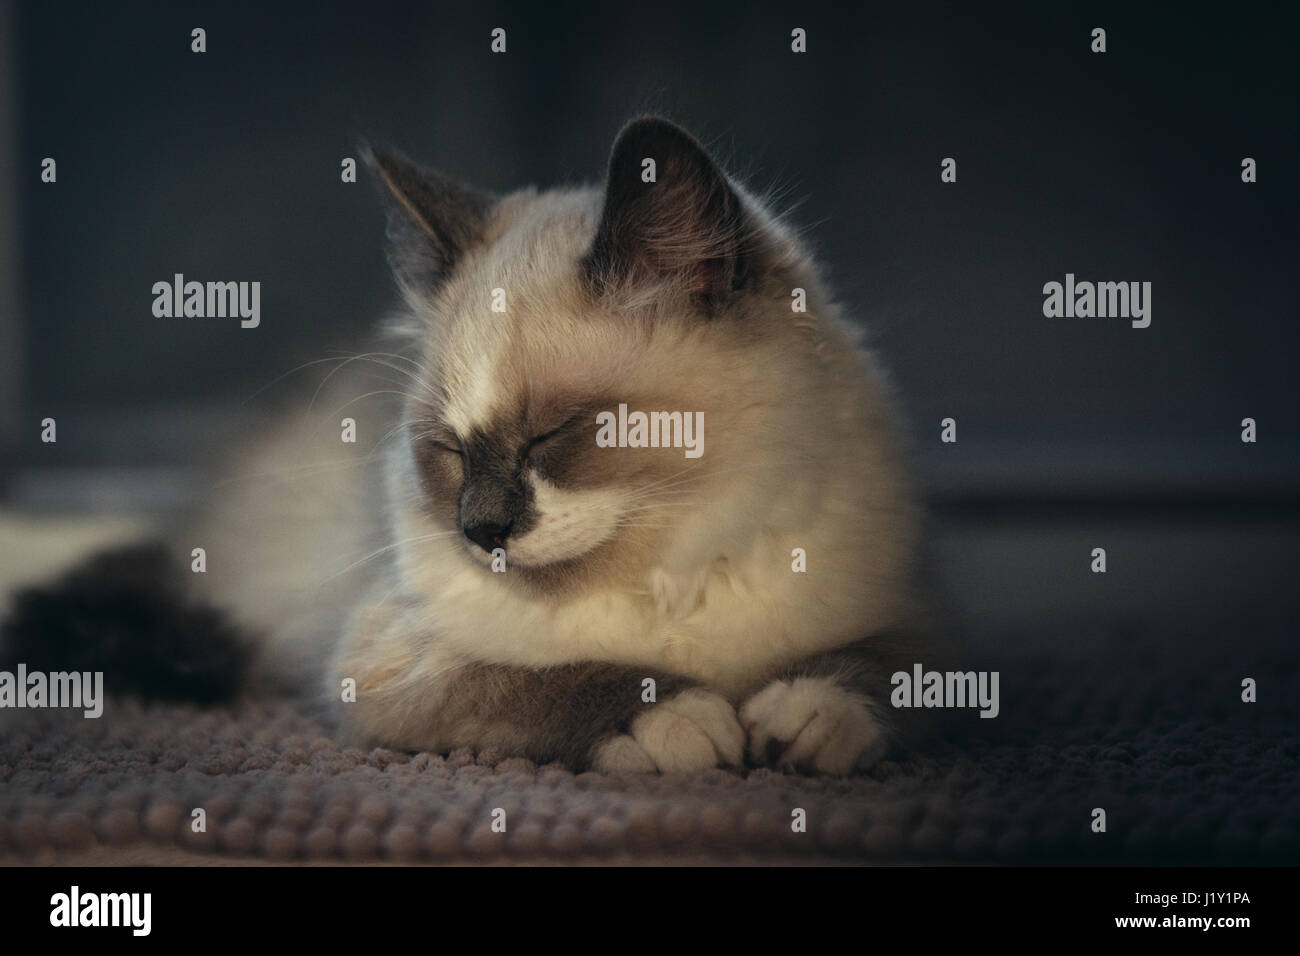 Schöne Ragdoll blauäugige Katze ordentlich auf einem Teppich liegen und schlafen. Katze hat leichten Mantel und weißer Fleck auf der Stirn, auf einem dunklen Hintergrund. Stockfoto